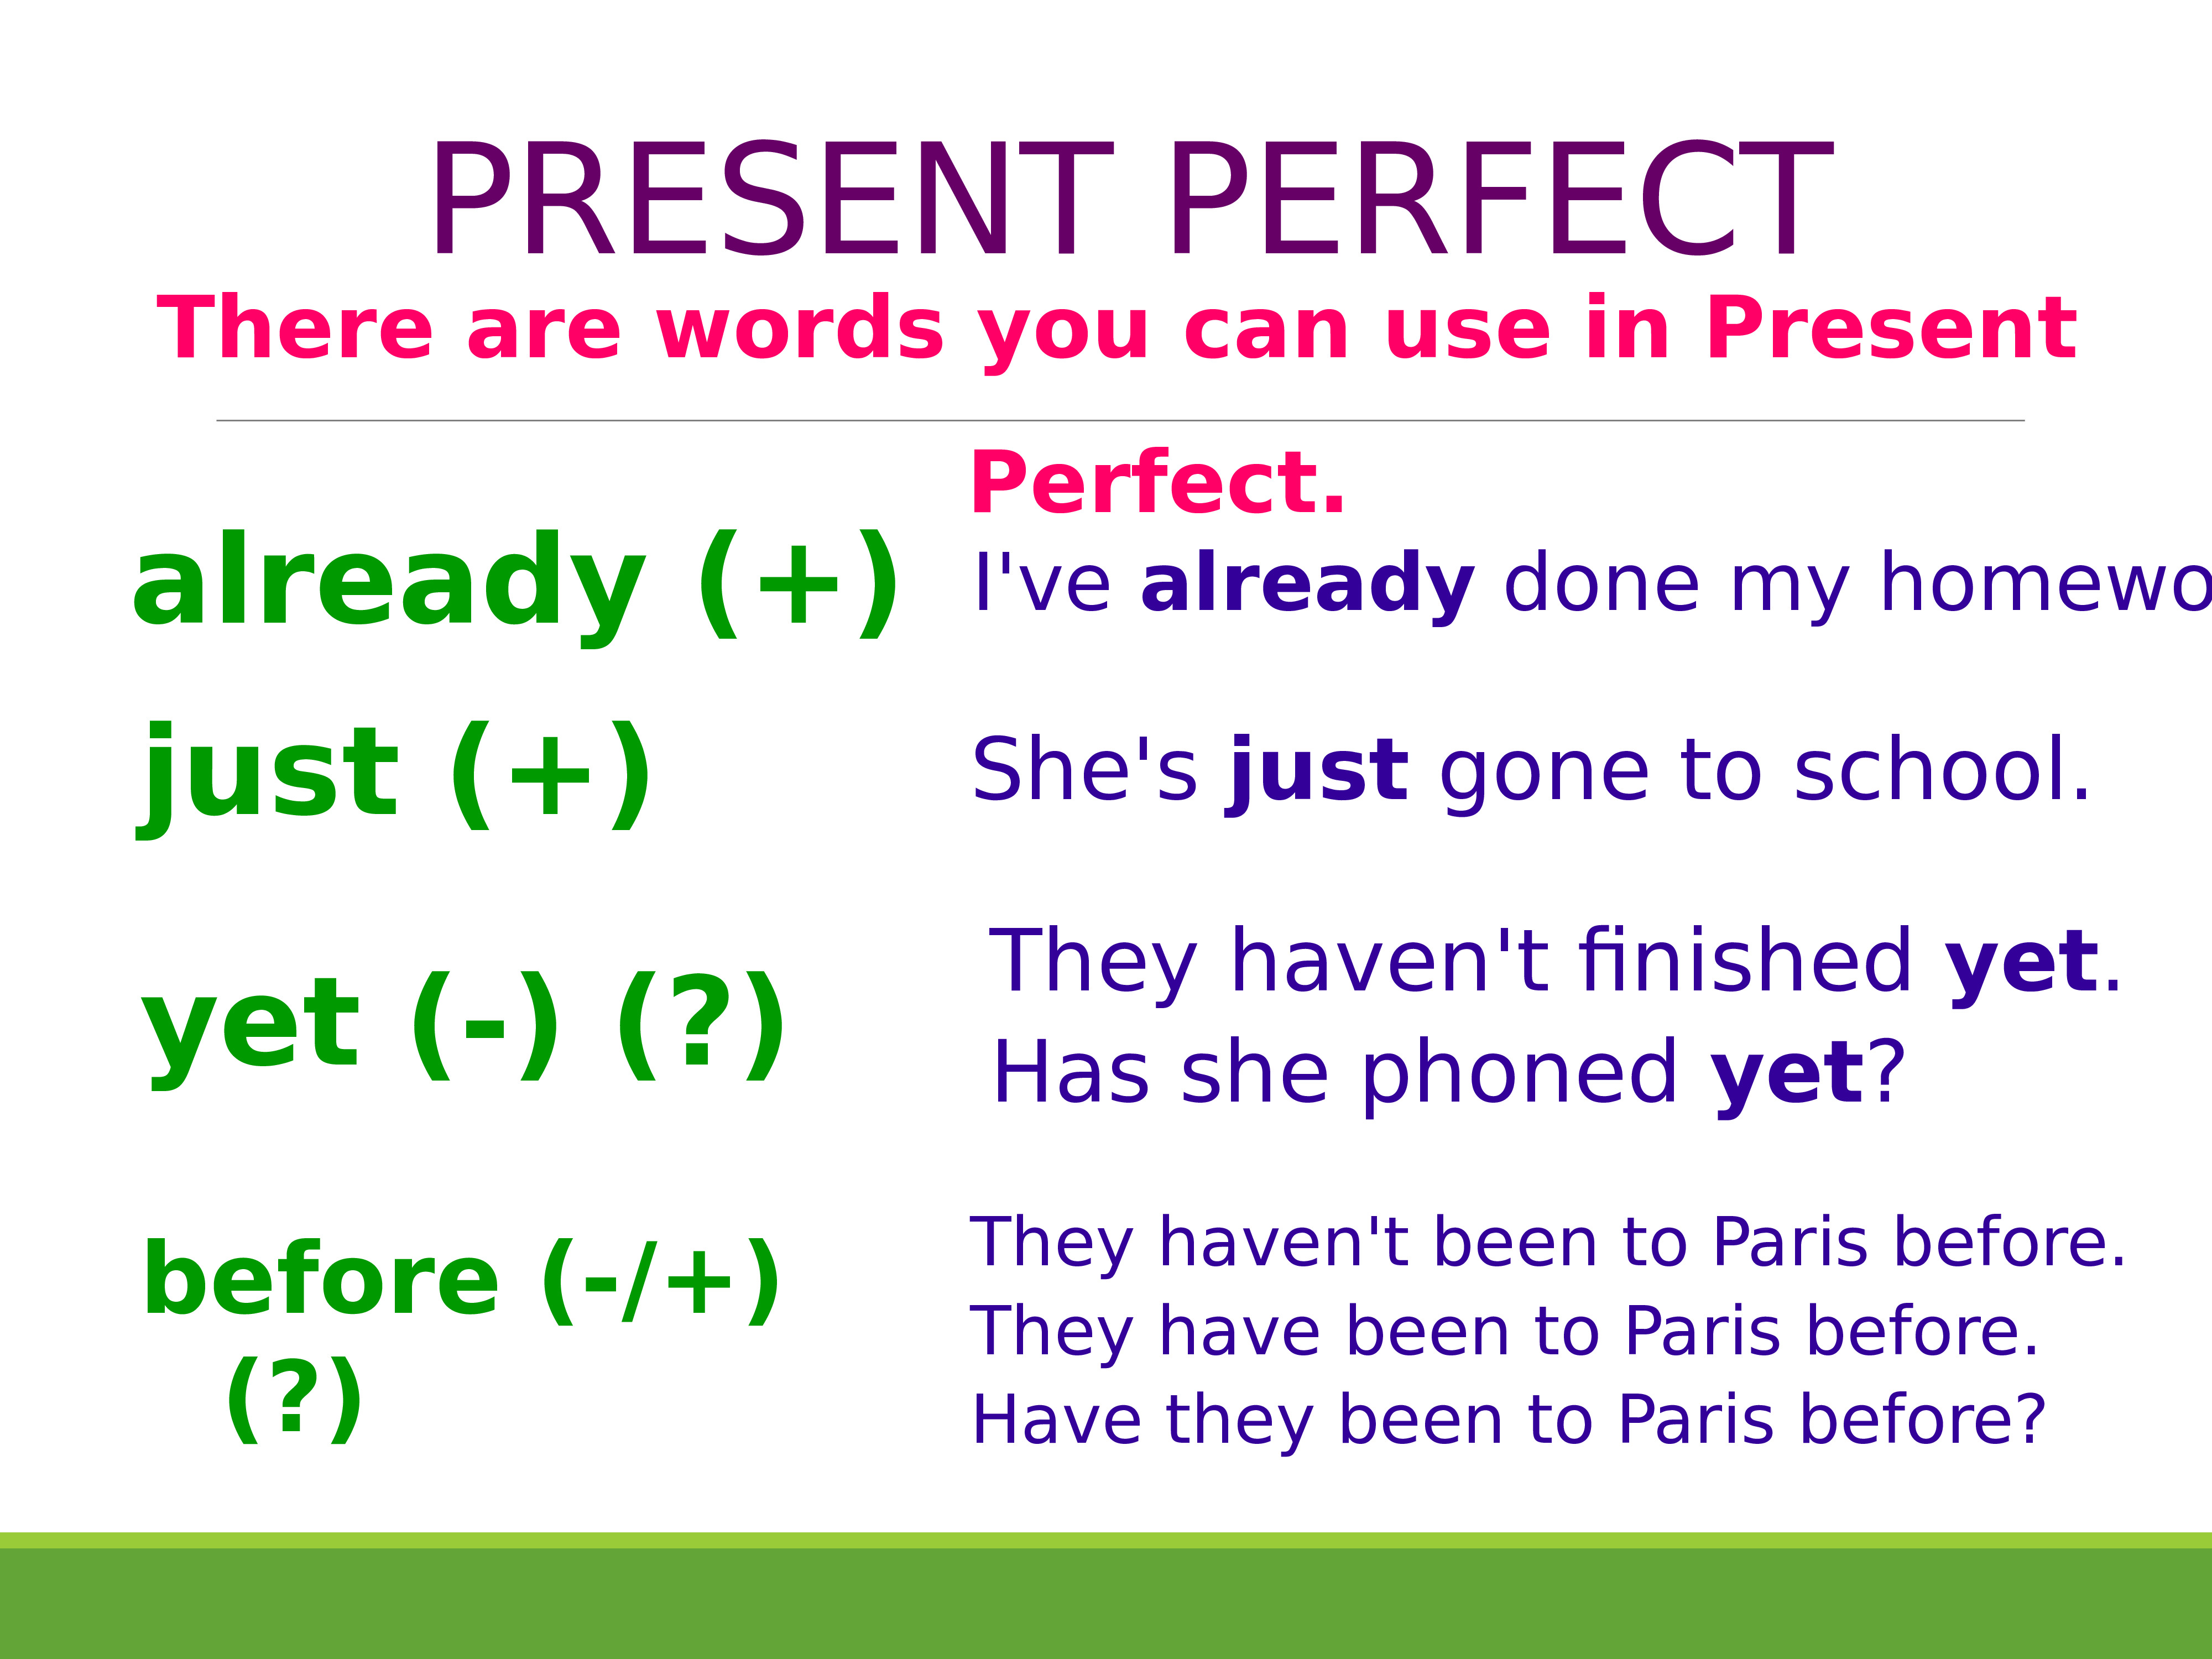 Present perfect c have. Правило англ яз present perfect. Present perfect simple образование. Present perfect Tense правило. Present perfect Tense образование.